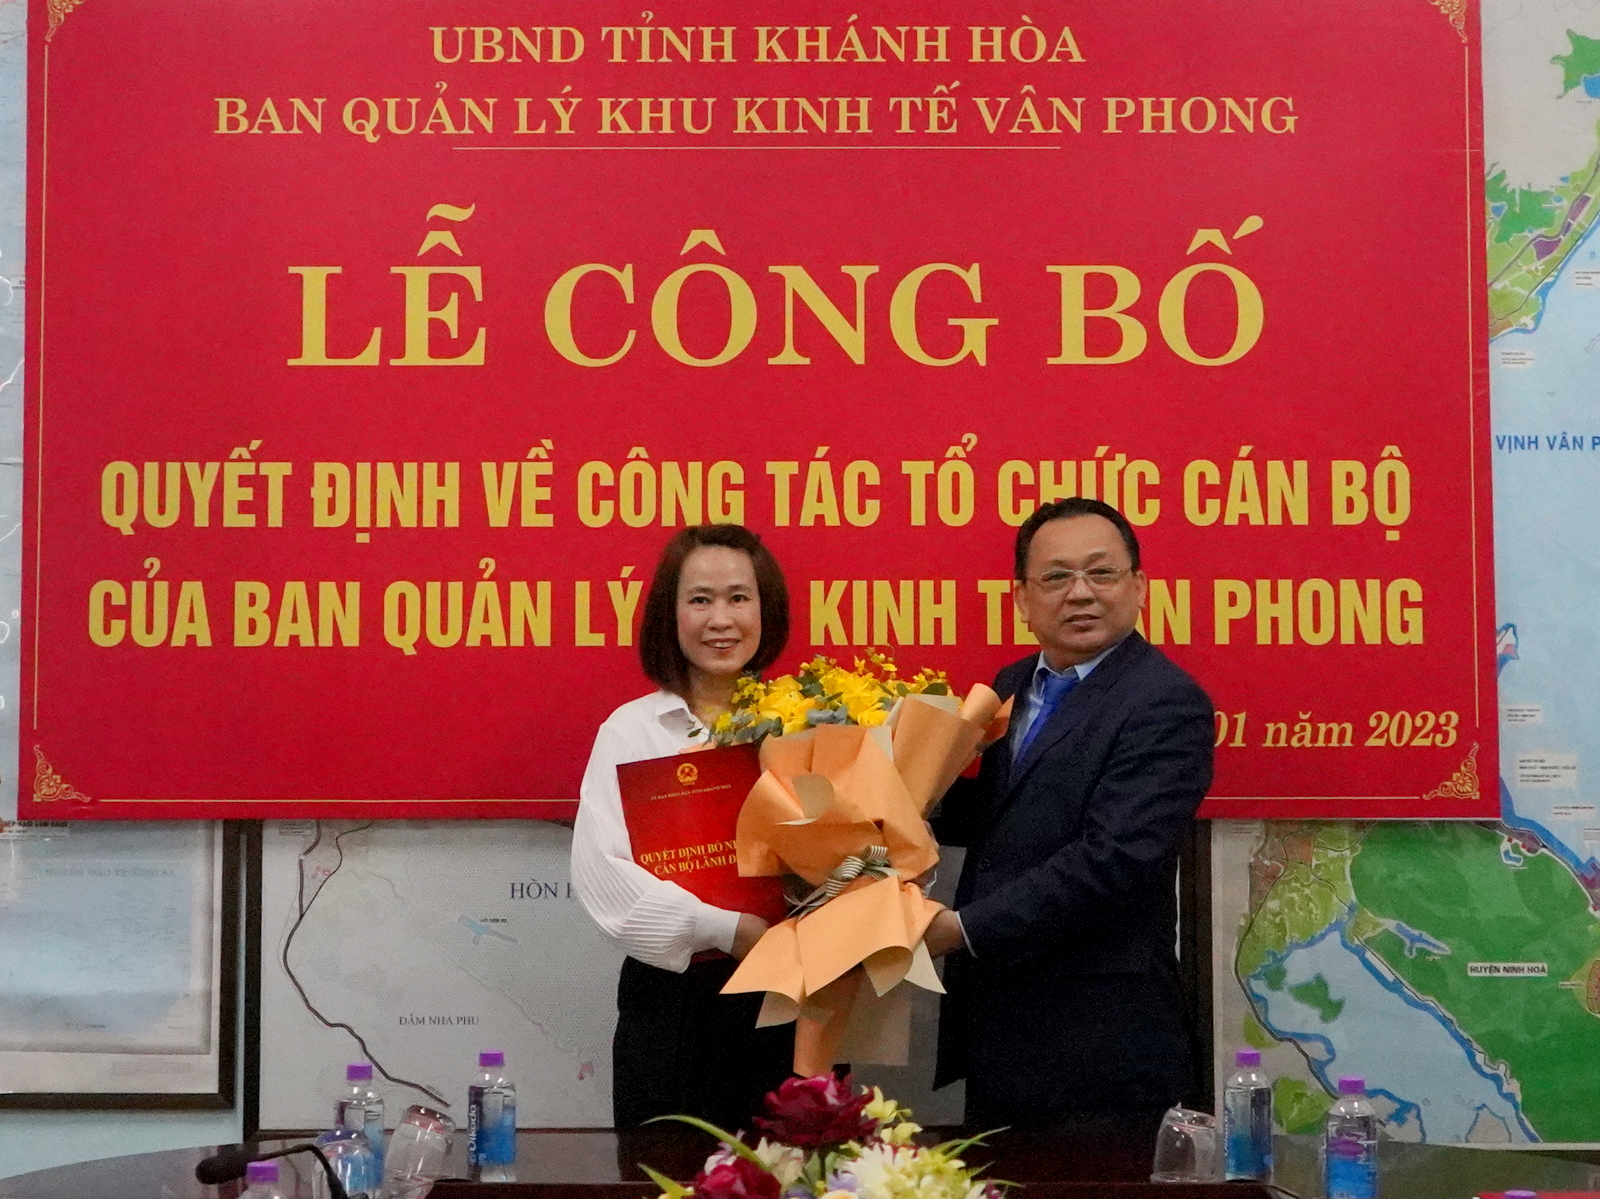 Ông Lê Hữu Hoàng trao quyết định cho bà Vương Thị Lệ Huyền.